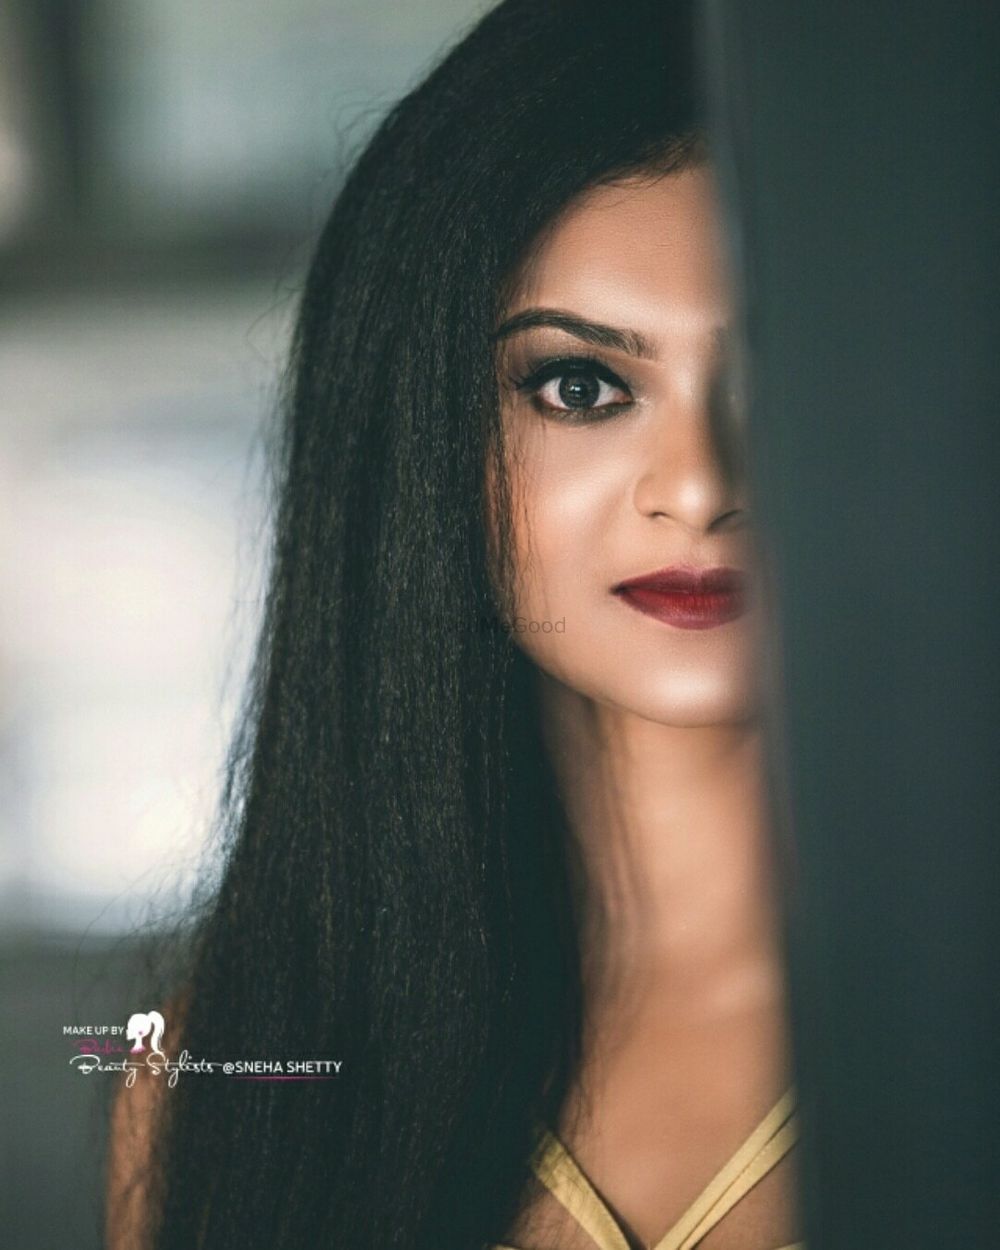 Photo From Photoshoots pics - By Beauty Stylist Sneha Shetty